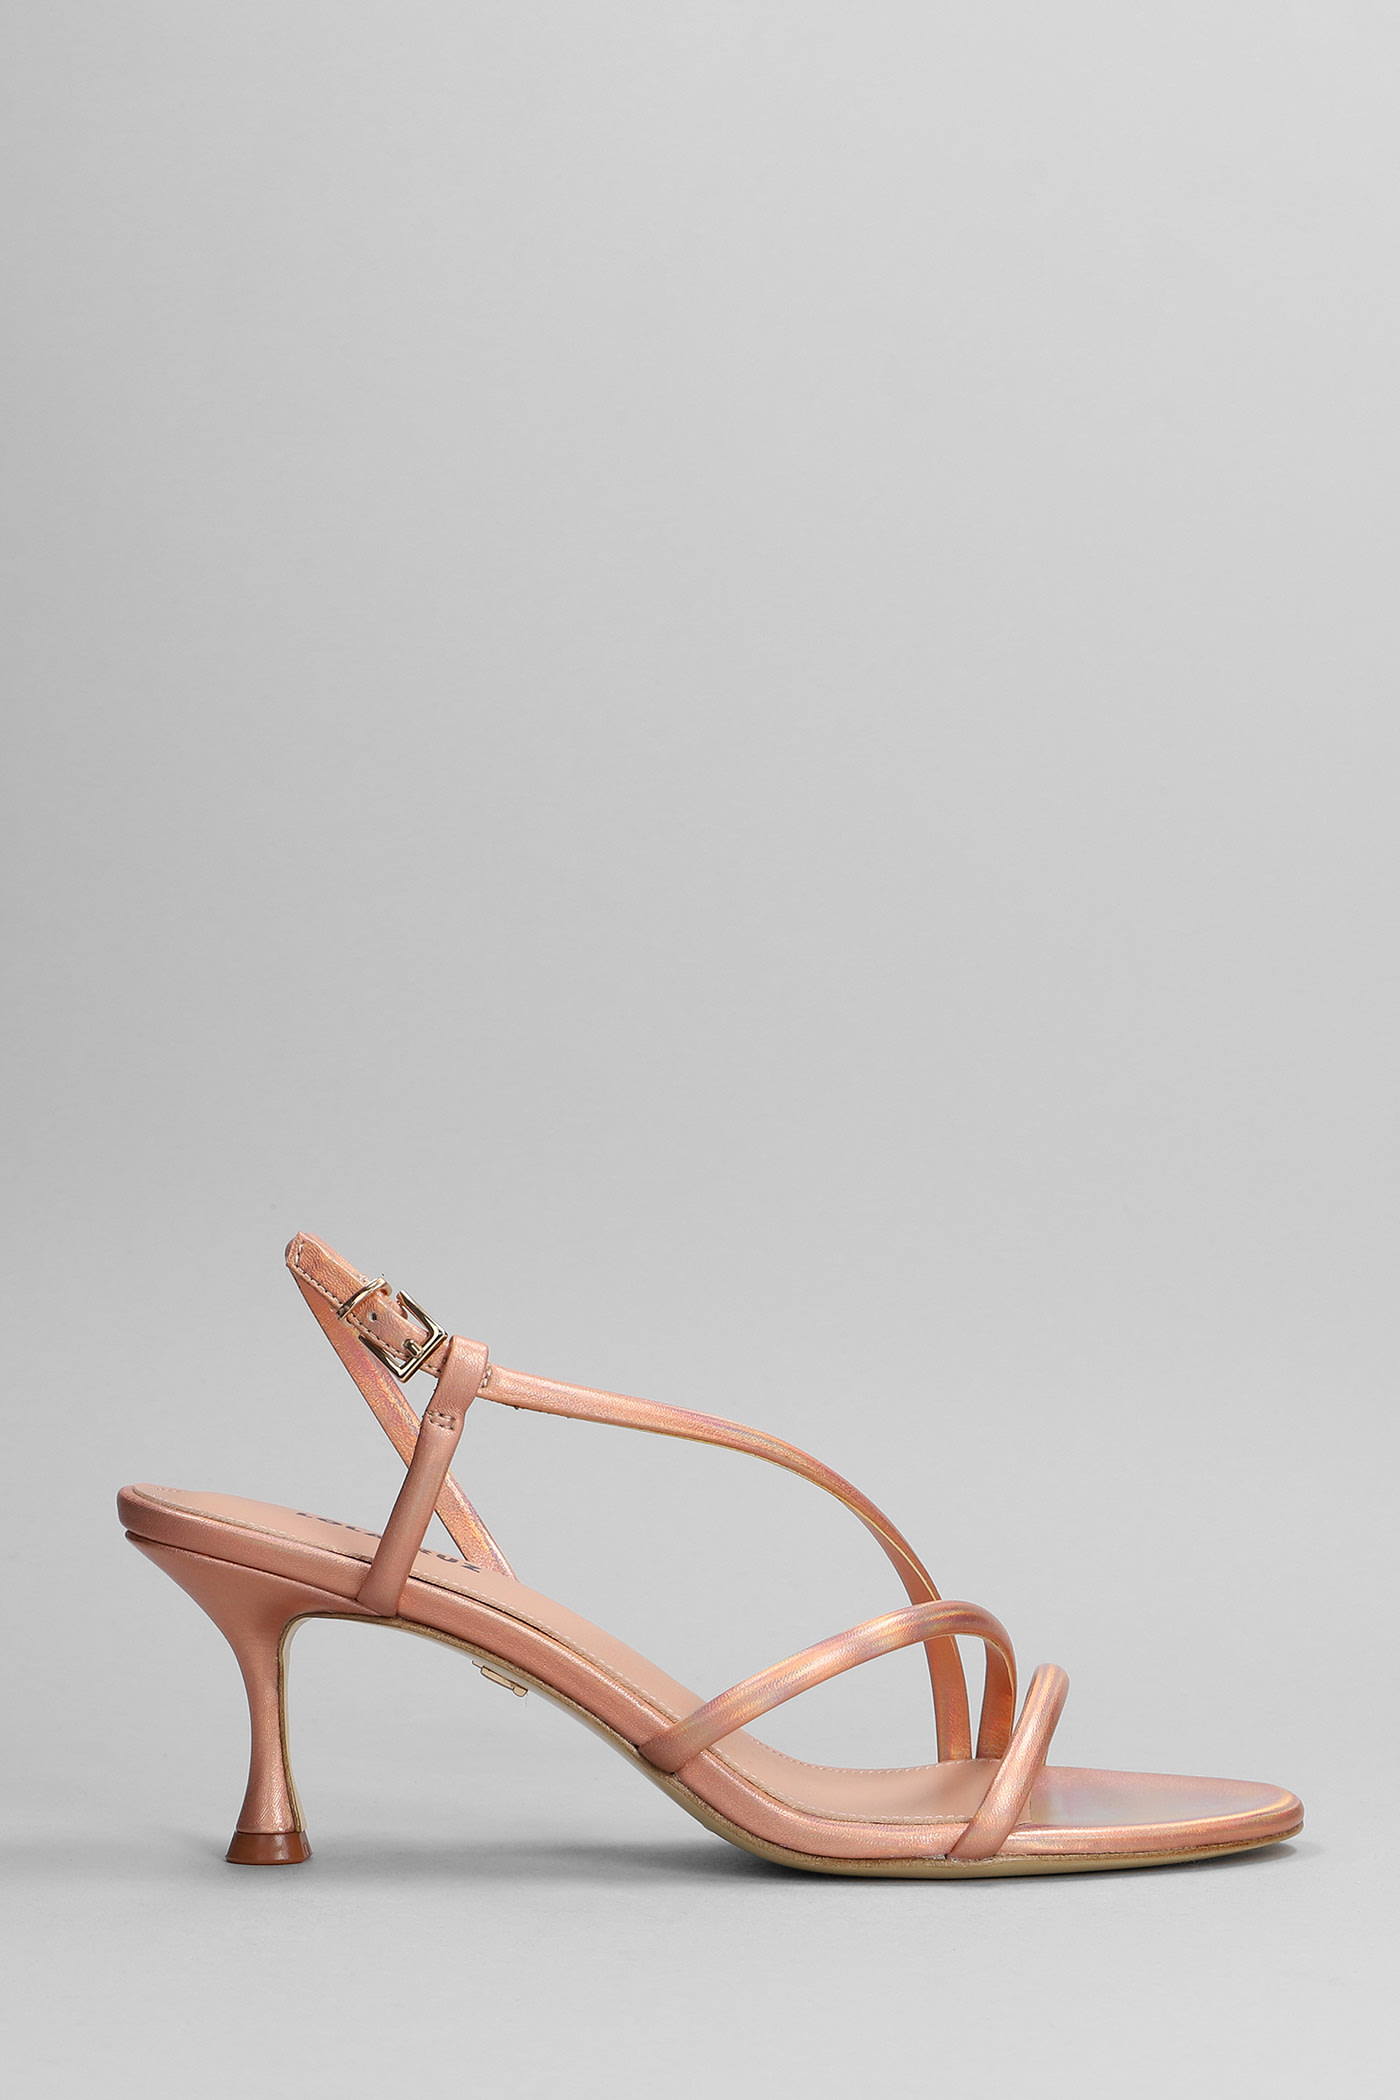 Lola Cruz Sandals In Copper Leather